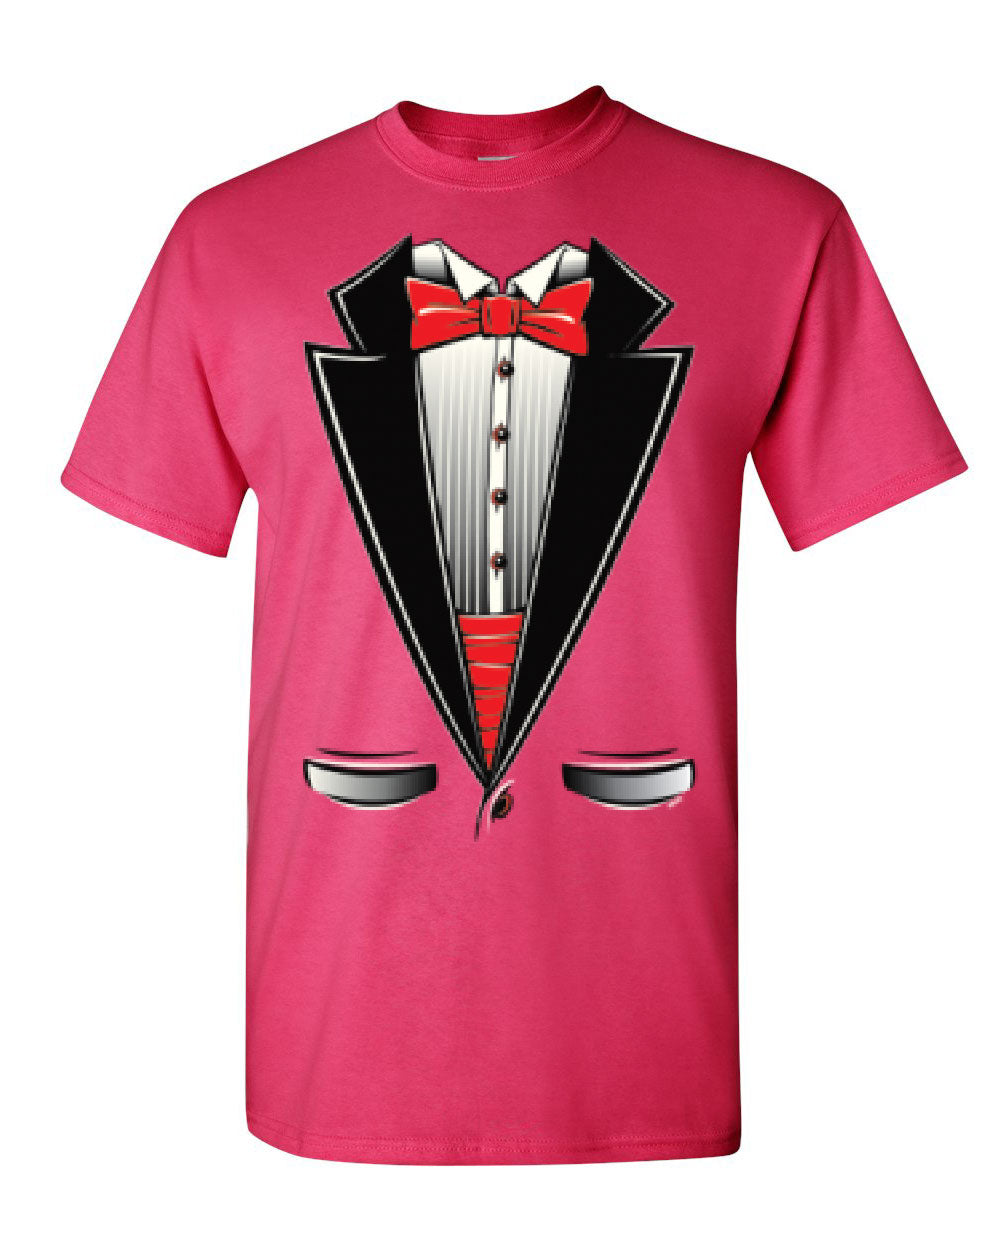 Funny Tuxedo Bow Tie T-Shirt Tux Wedding Party Tee Shirt | eBay